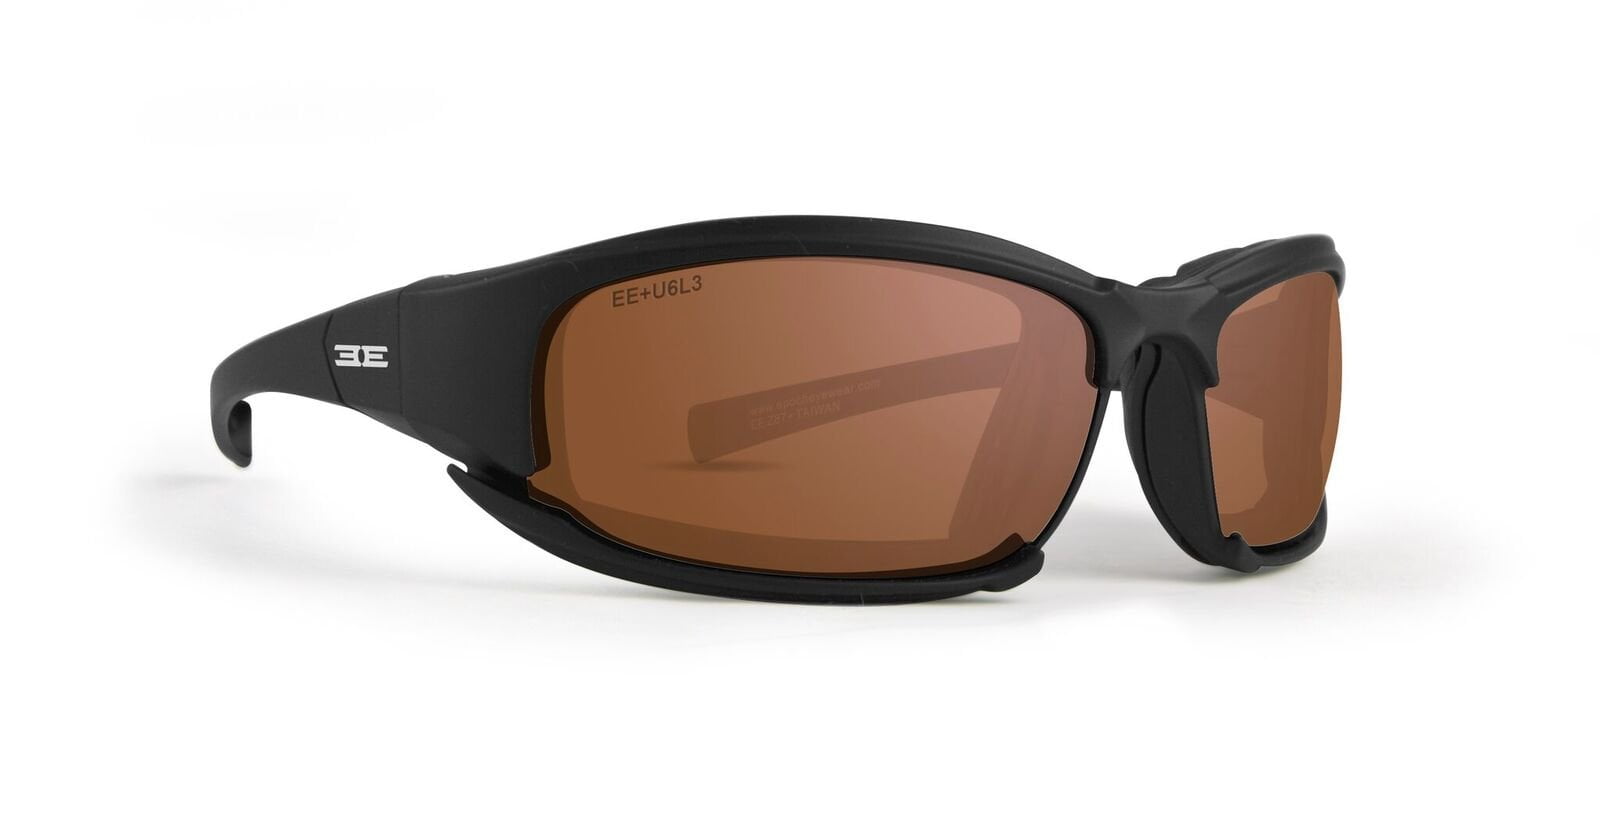 New Epoch Eyewear Hybrid Photochromic Ansi Z87.1 Motorcycle Sunglasses 